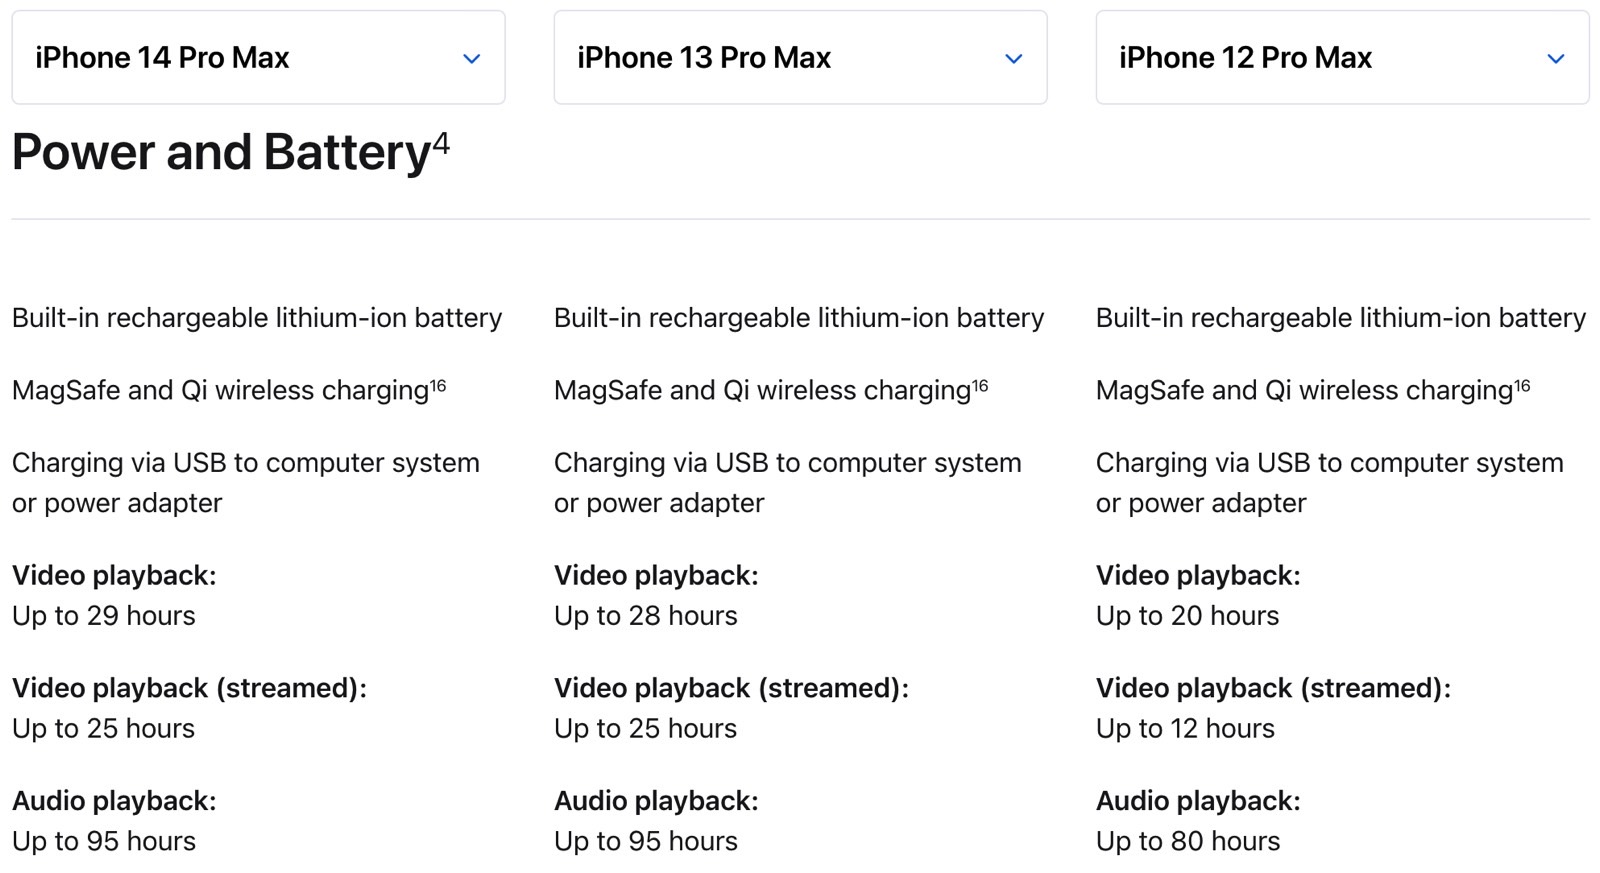 Autonomie De La Batterie De L'Iphone 14 Pro Max Par Rapport À L'Iphone 13 Pro Max Et À L'Iphone 12 Pro Max.